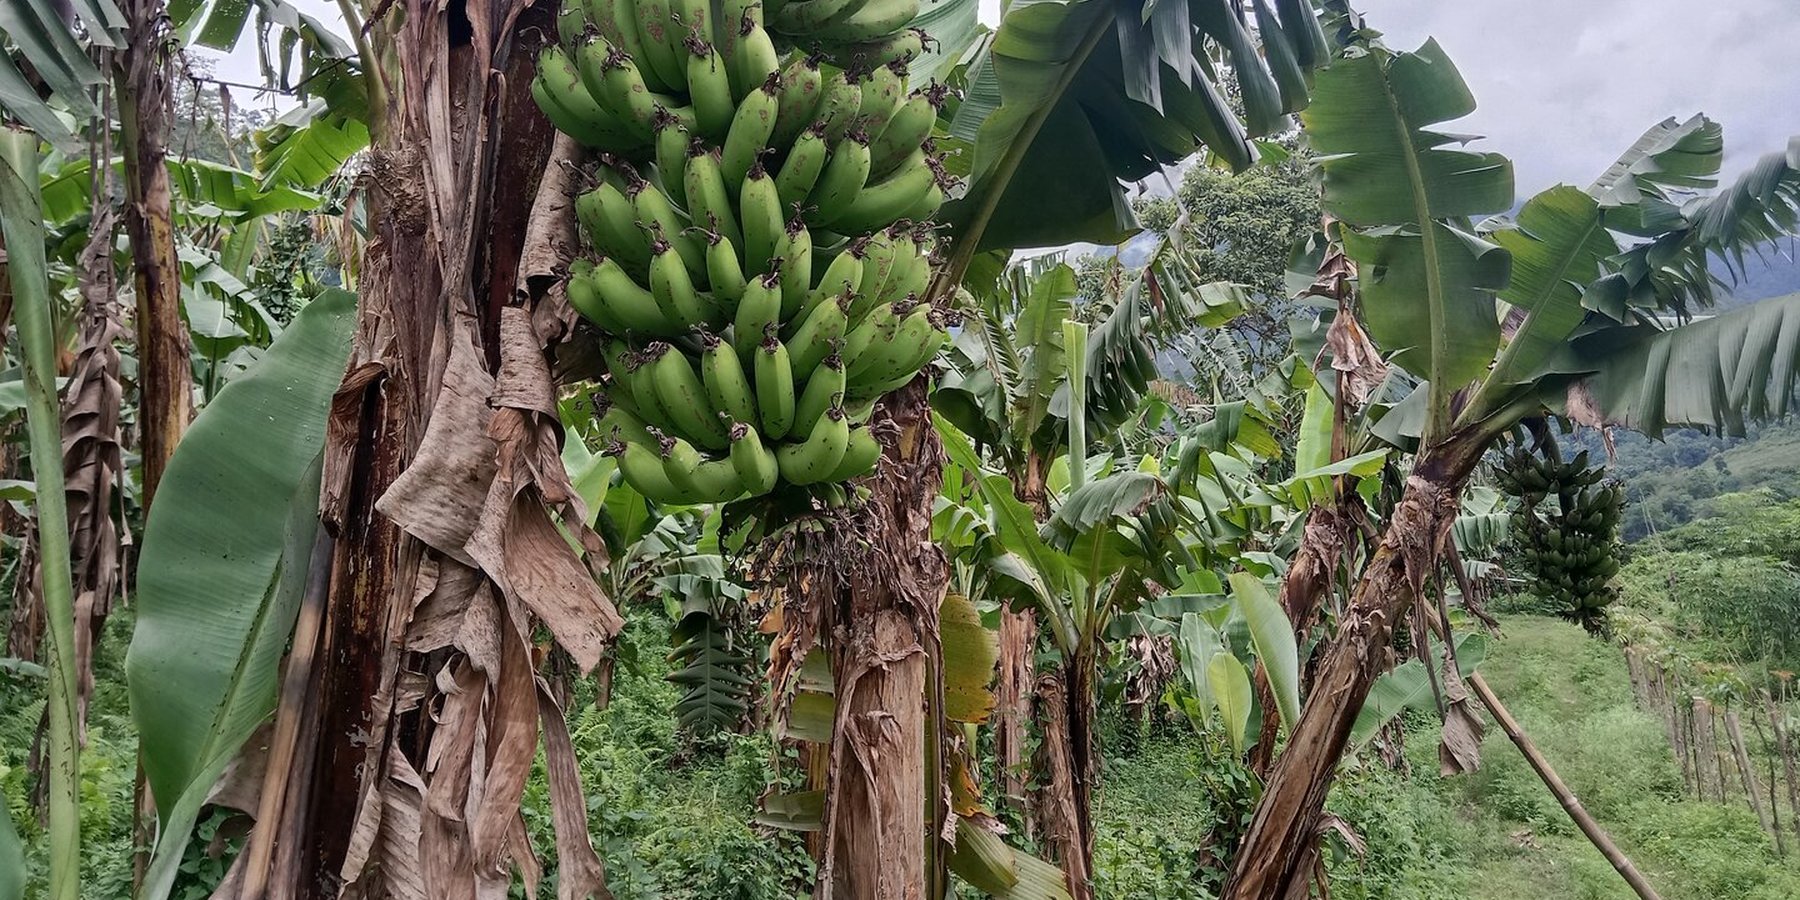 Banana plantation in the rehabilitated area